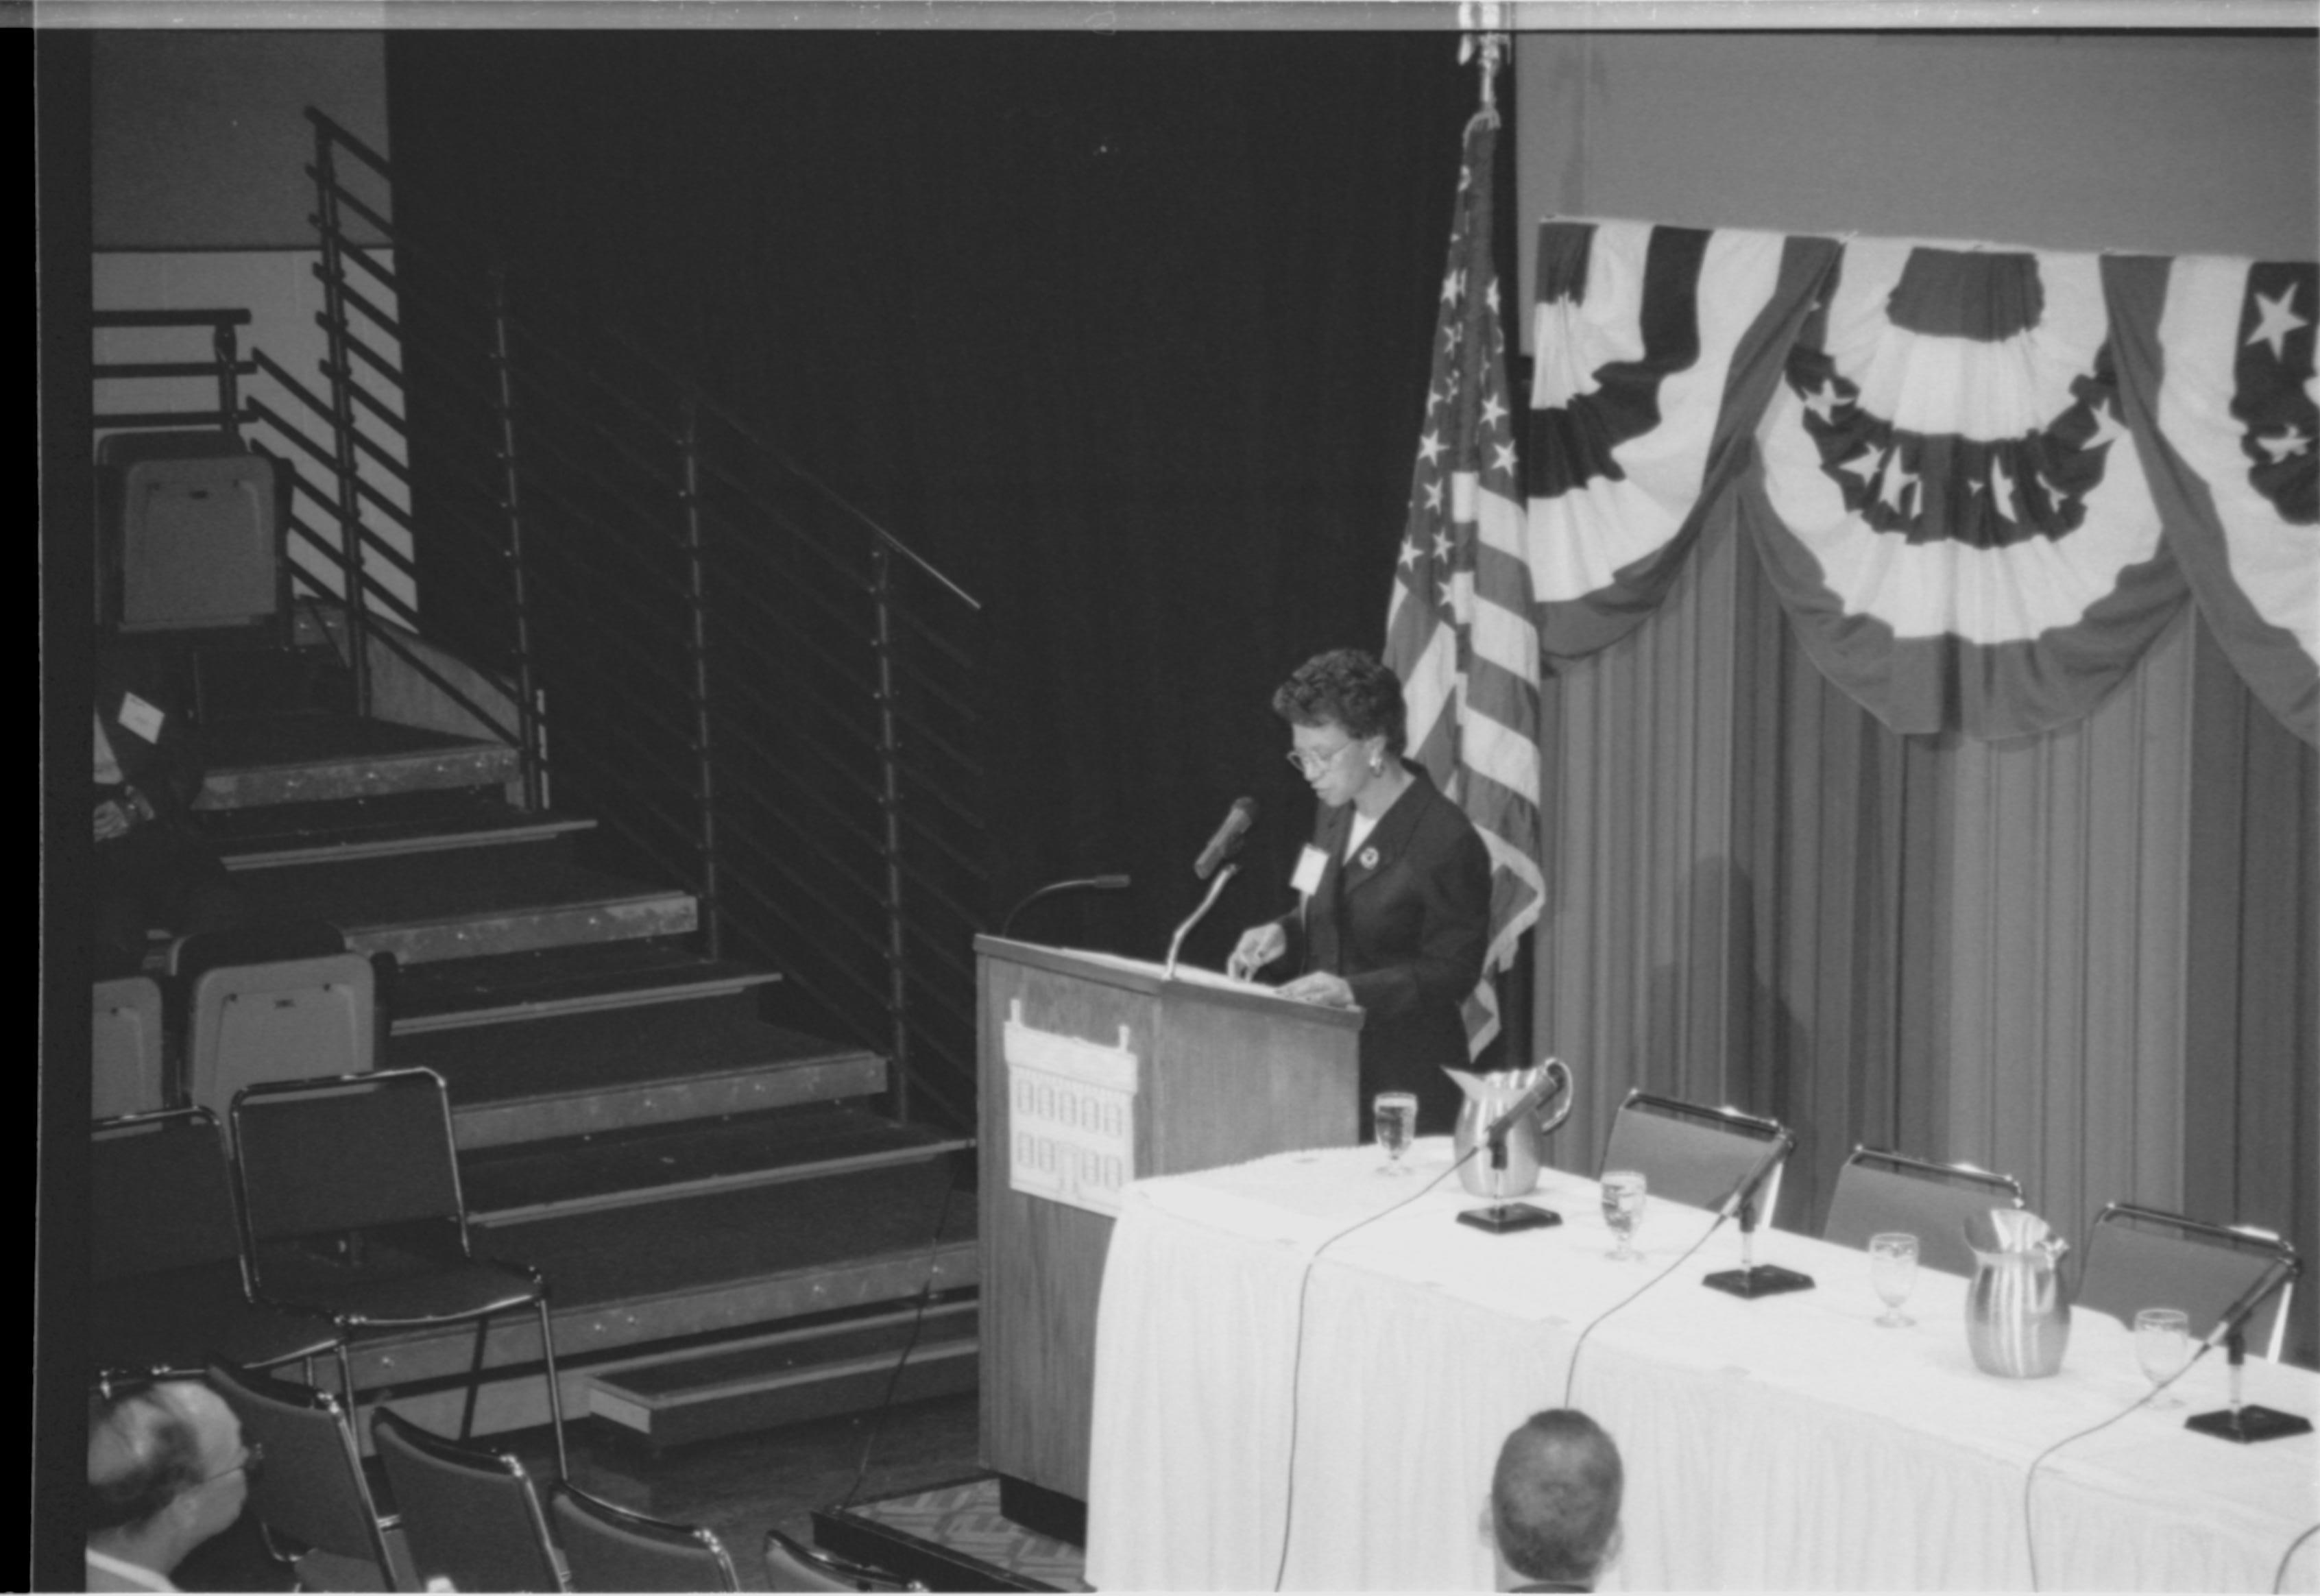 Lady speaking at podium, looking at notes. 1999-16; 36 Colloquium, 1999